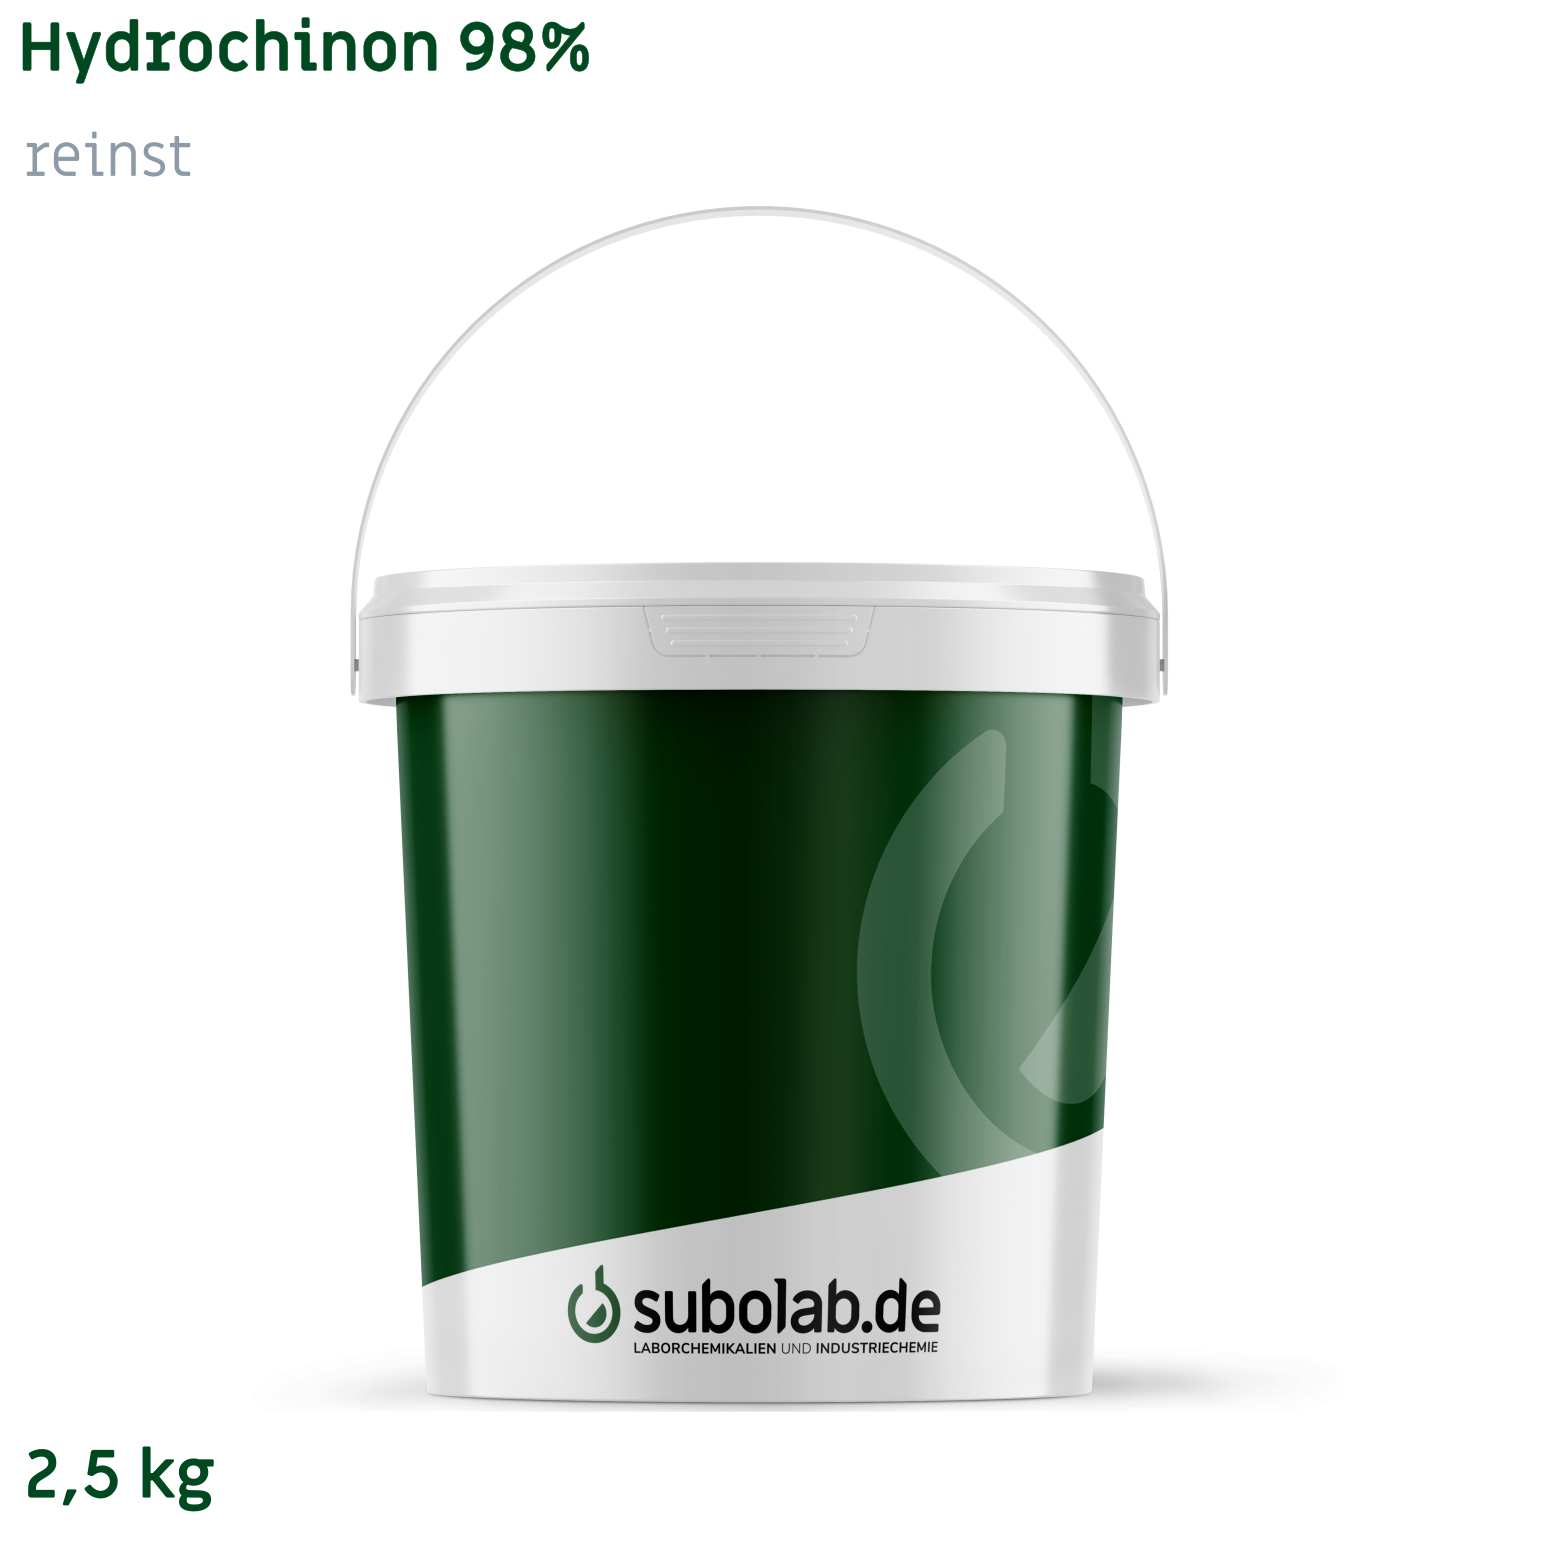 Bild von Hydrochinon 98% reinst (2,5 kg)